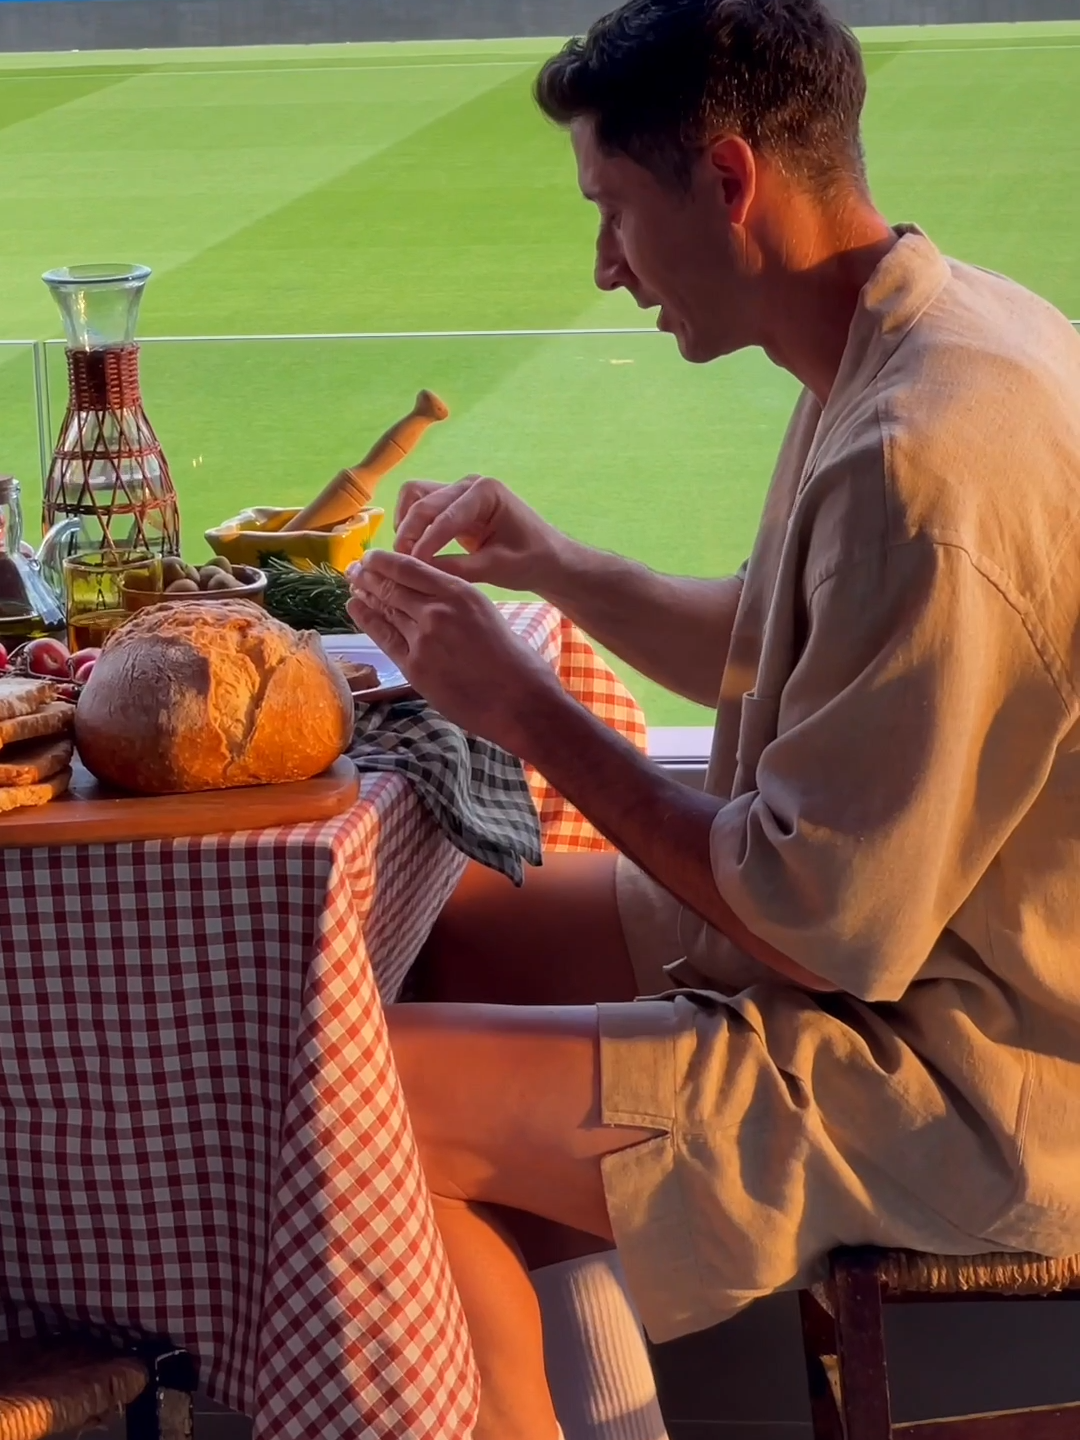 Lewy loves pa amb tomàquet 🥖🍅 #fcbarcelona #barçaontiktok #barcelona #lewandowski #deportesentiktok #catalunya